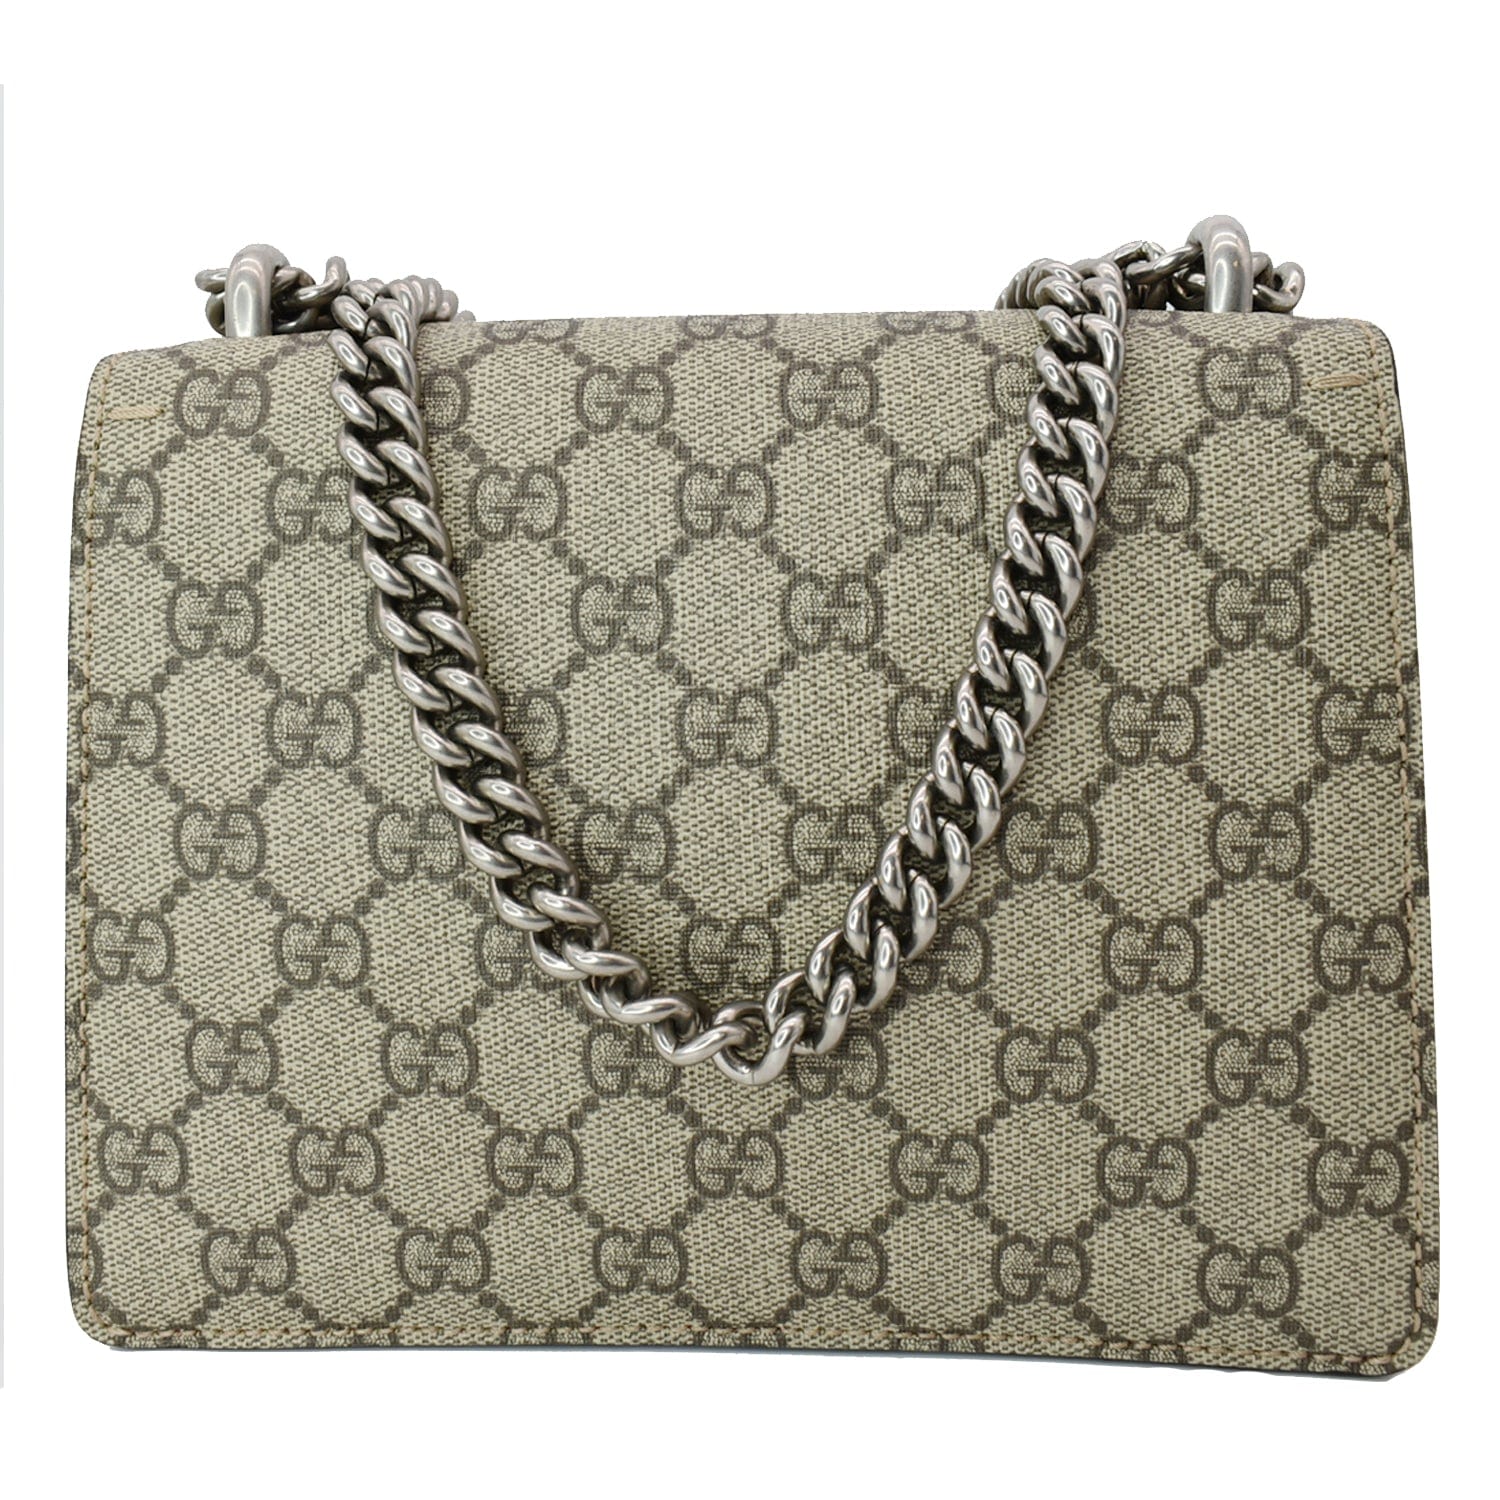 Gucci, GG Supreme Canvas Micro Cross-body Bag, Mens, Beige Multi